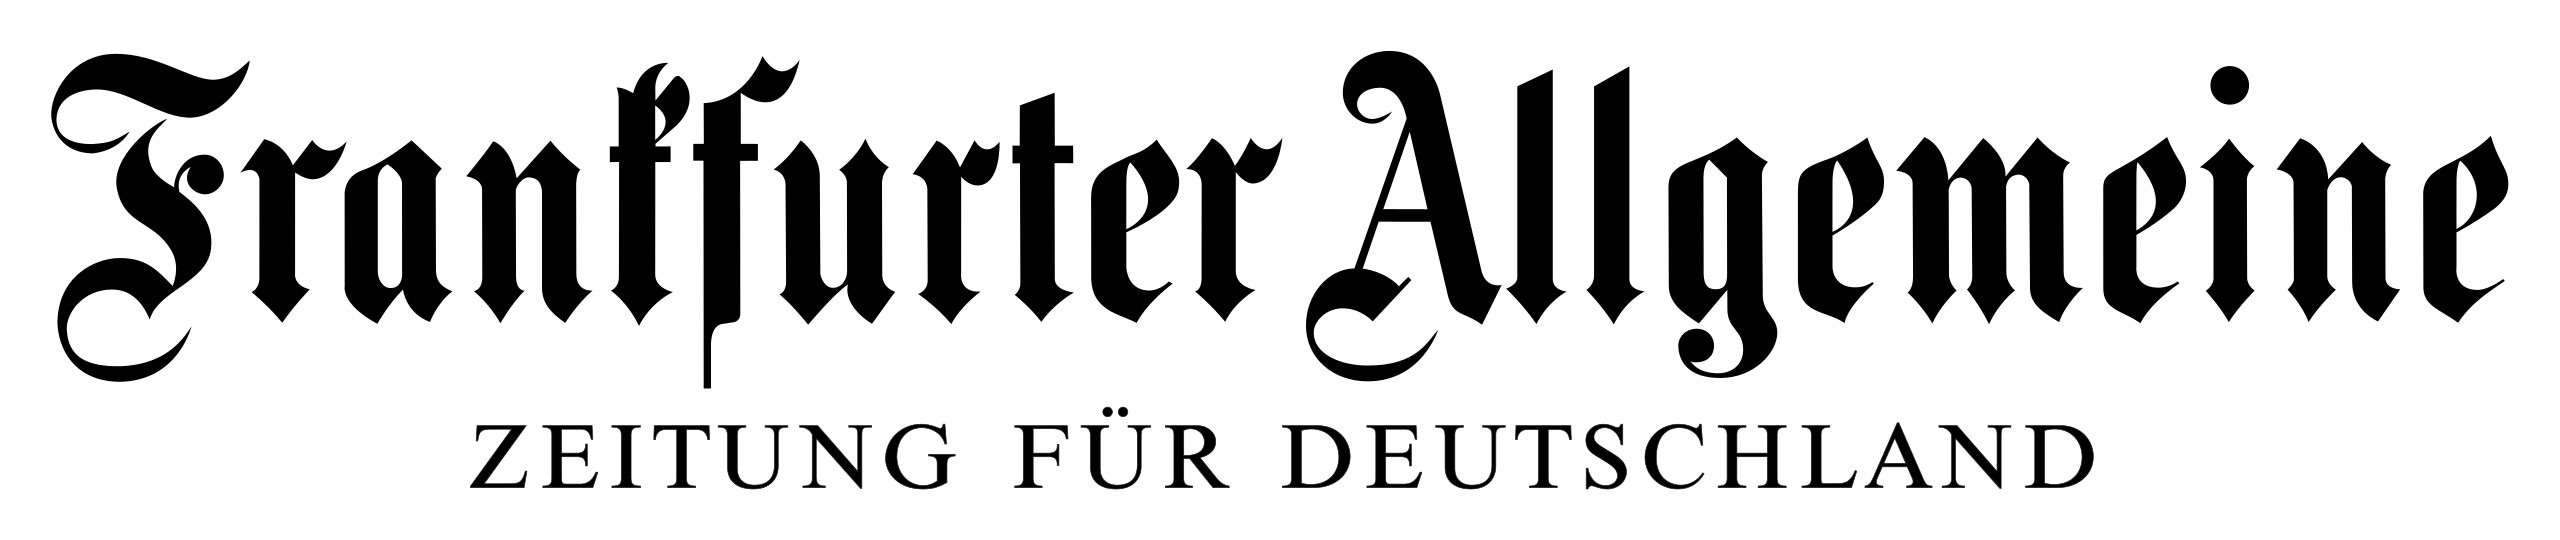 logo_frankfurterallgemeine